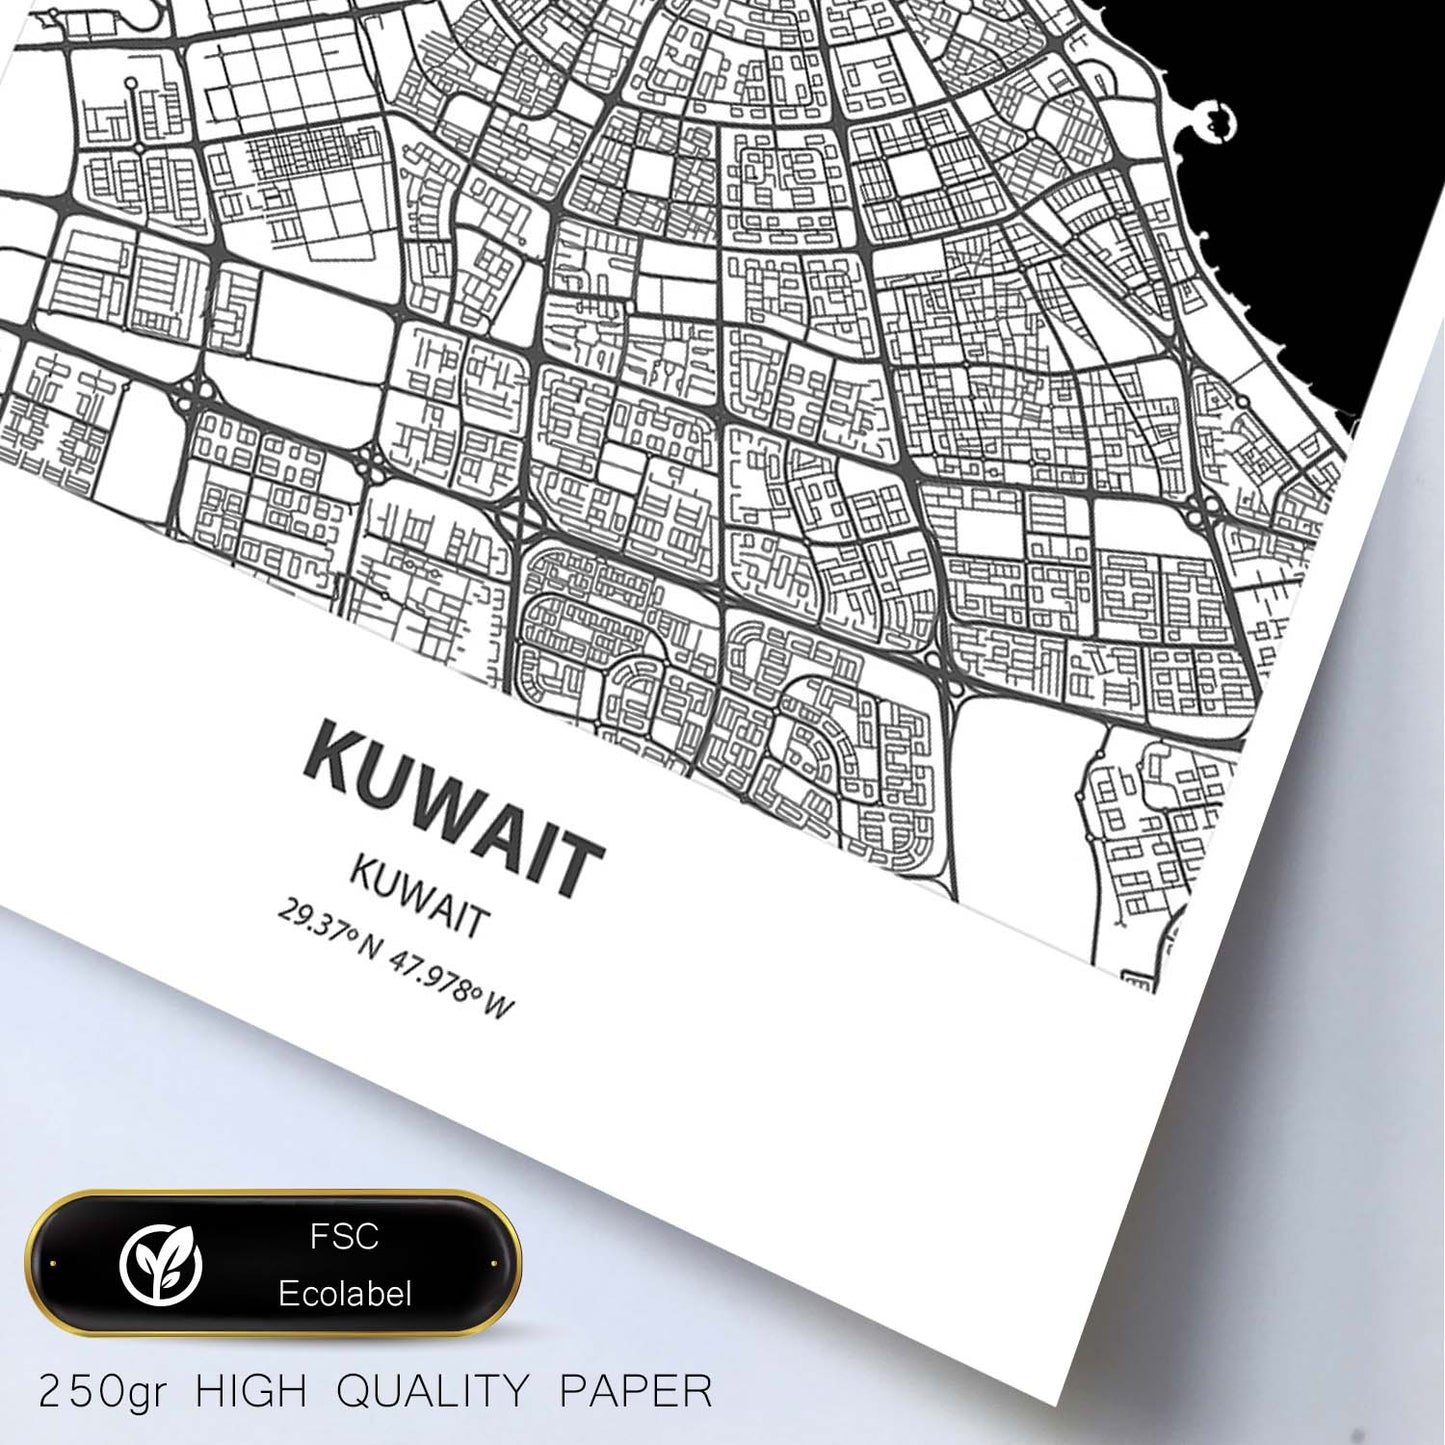 Poster con mapa de Kuwait - Kuwait. Láminas de ciudades de Oriente Medio con mares y ríos en color negro.-Artwork-Nacnic-Nacnic Estudio SL